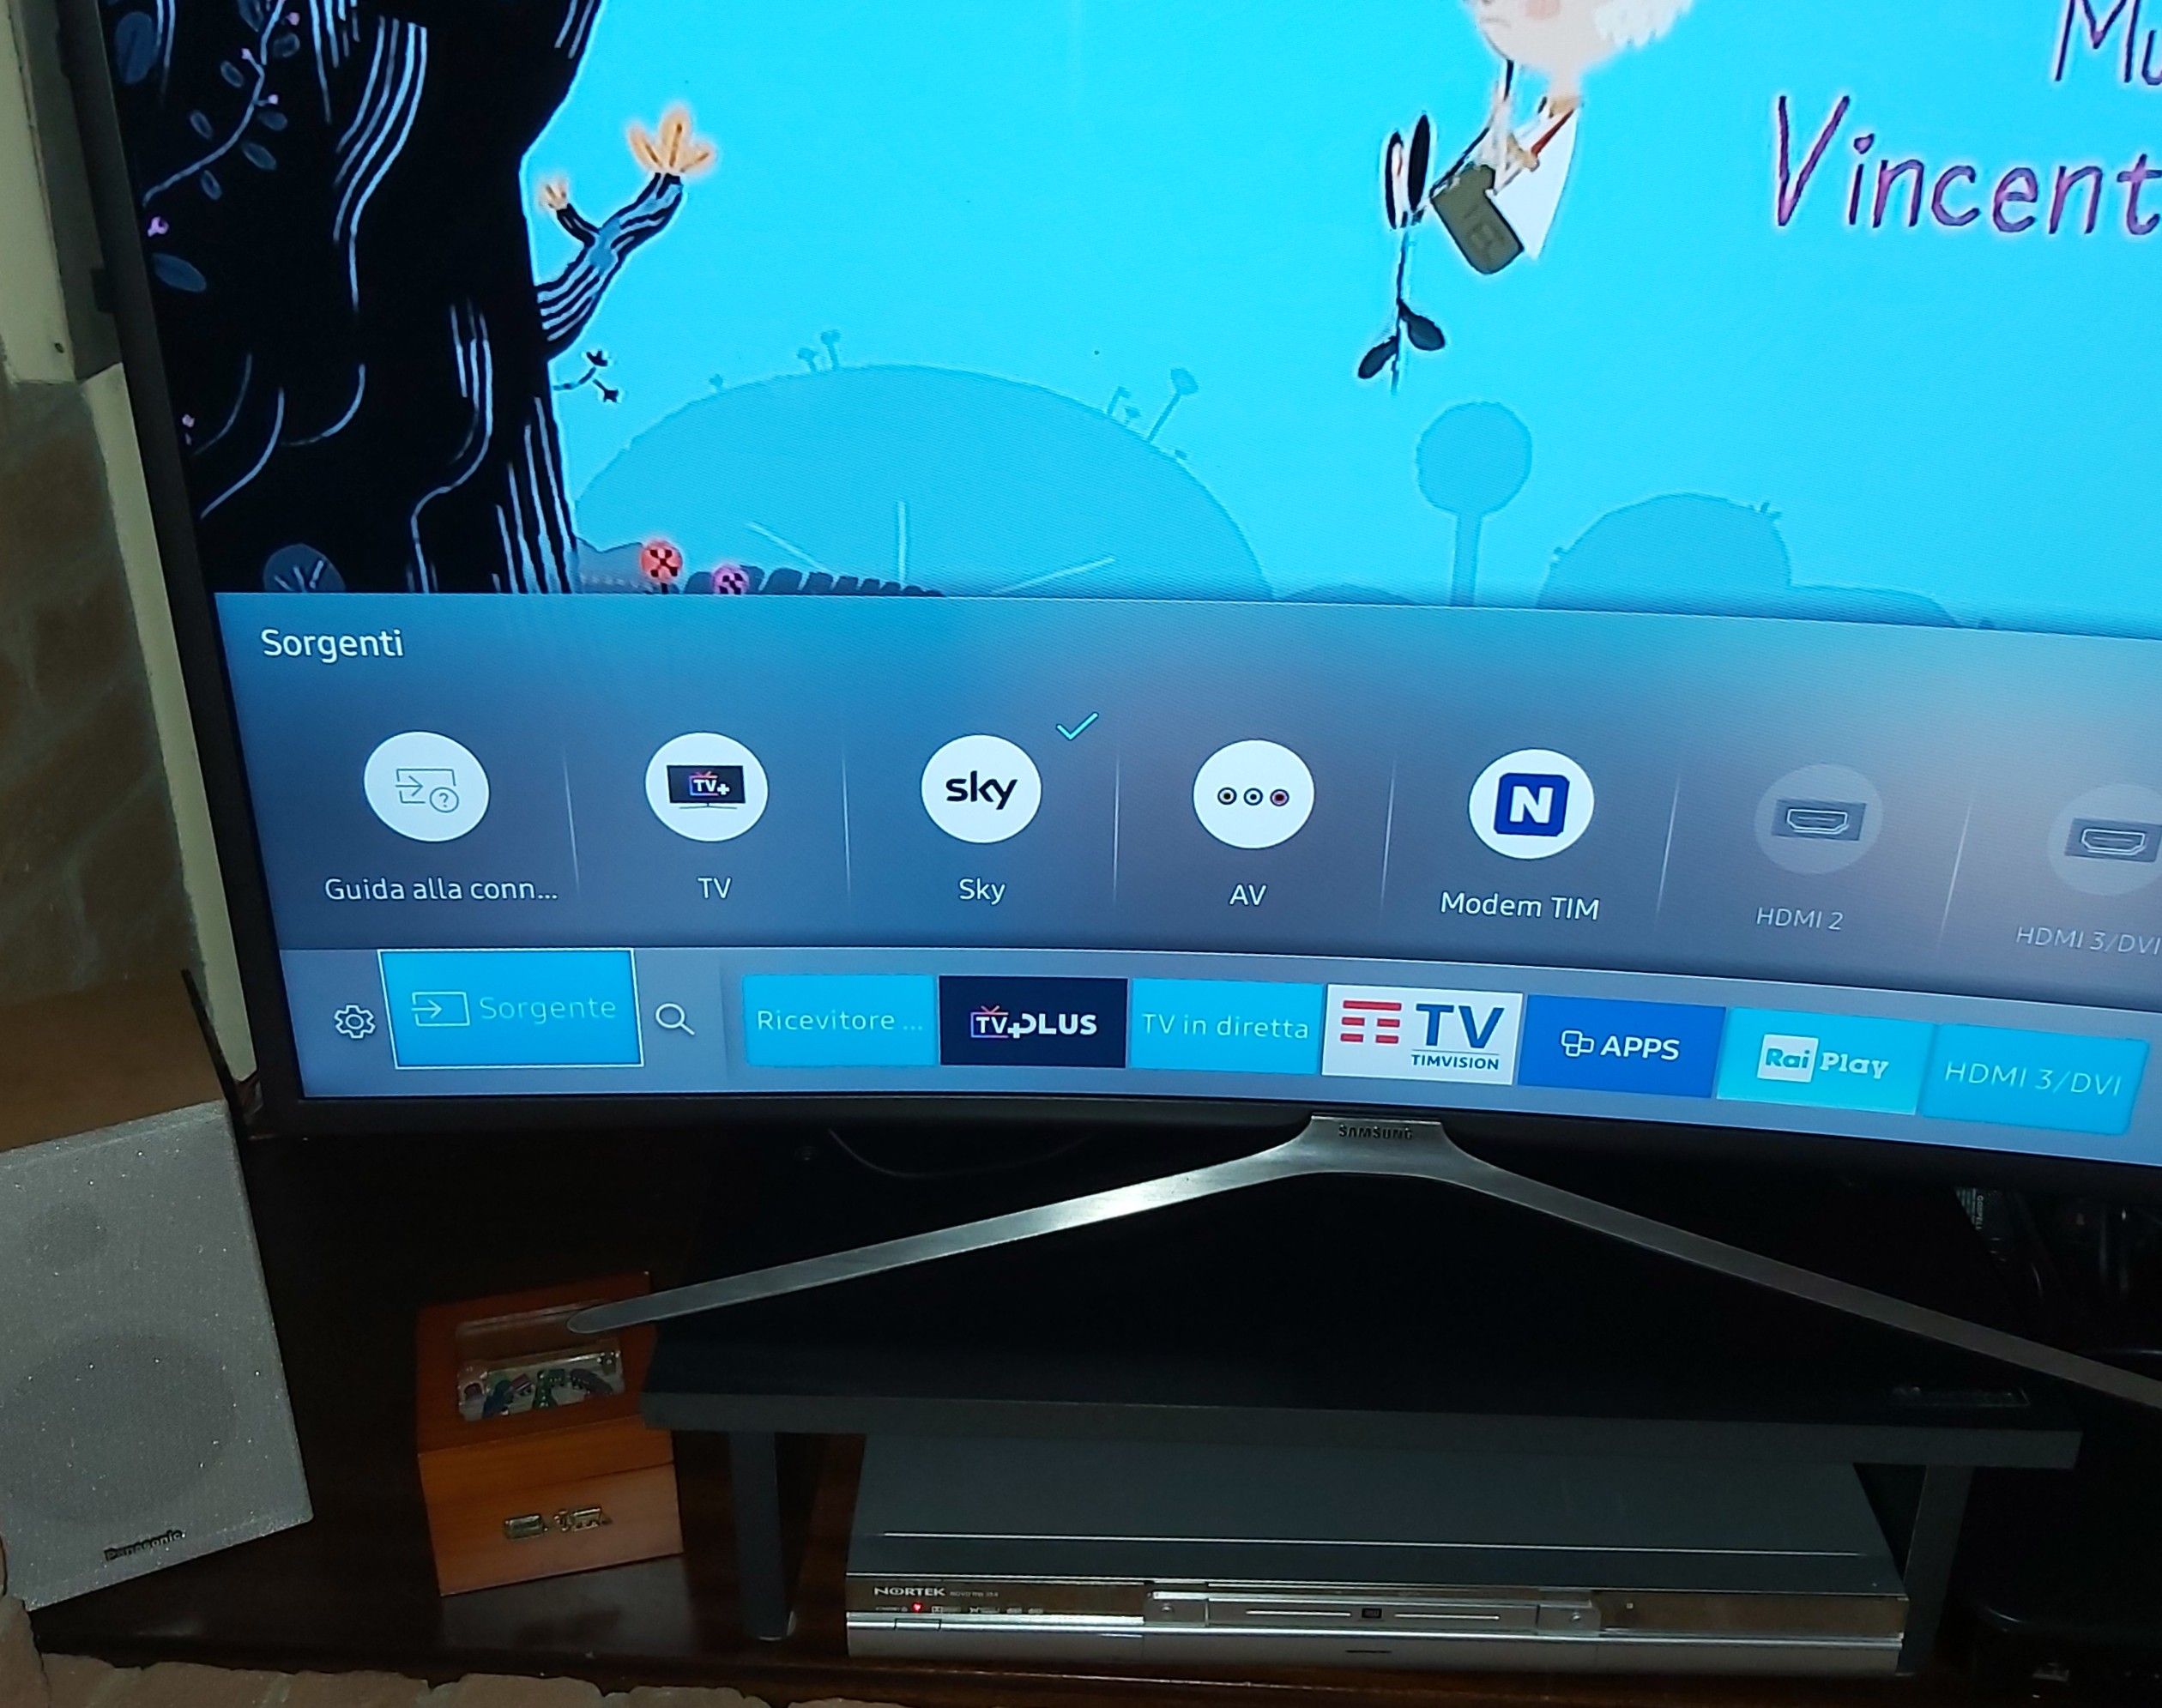 Canali TV Spariti Vedo solo Smart TV - Samsung Community